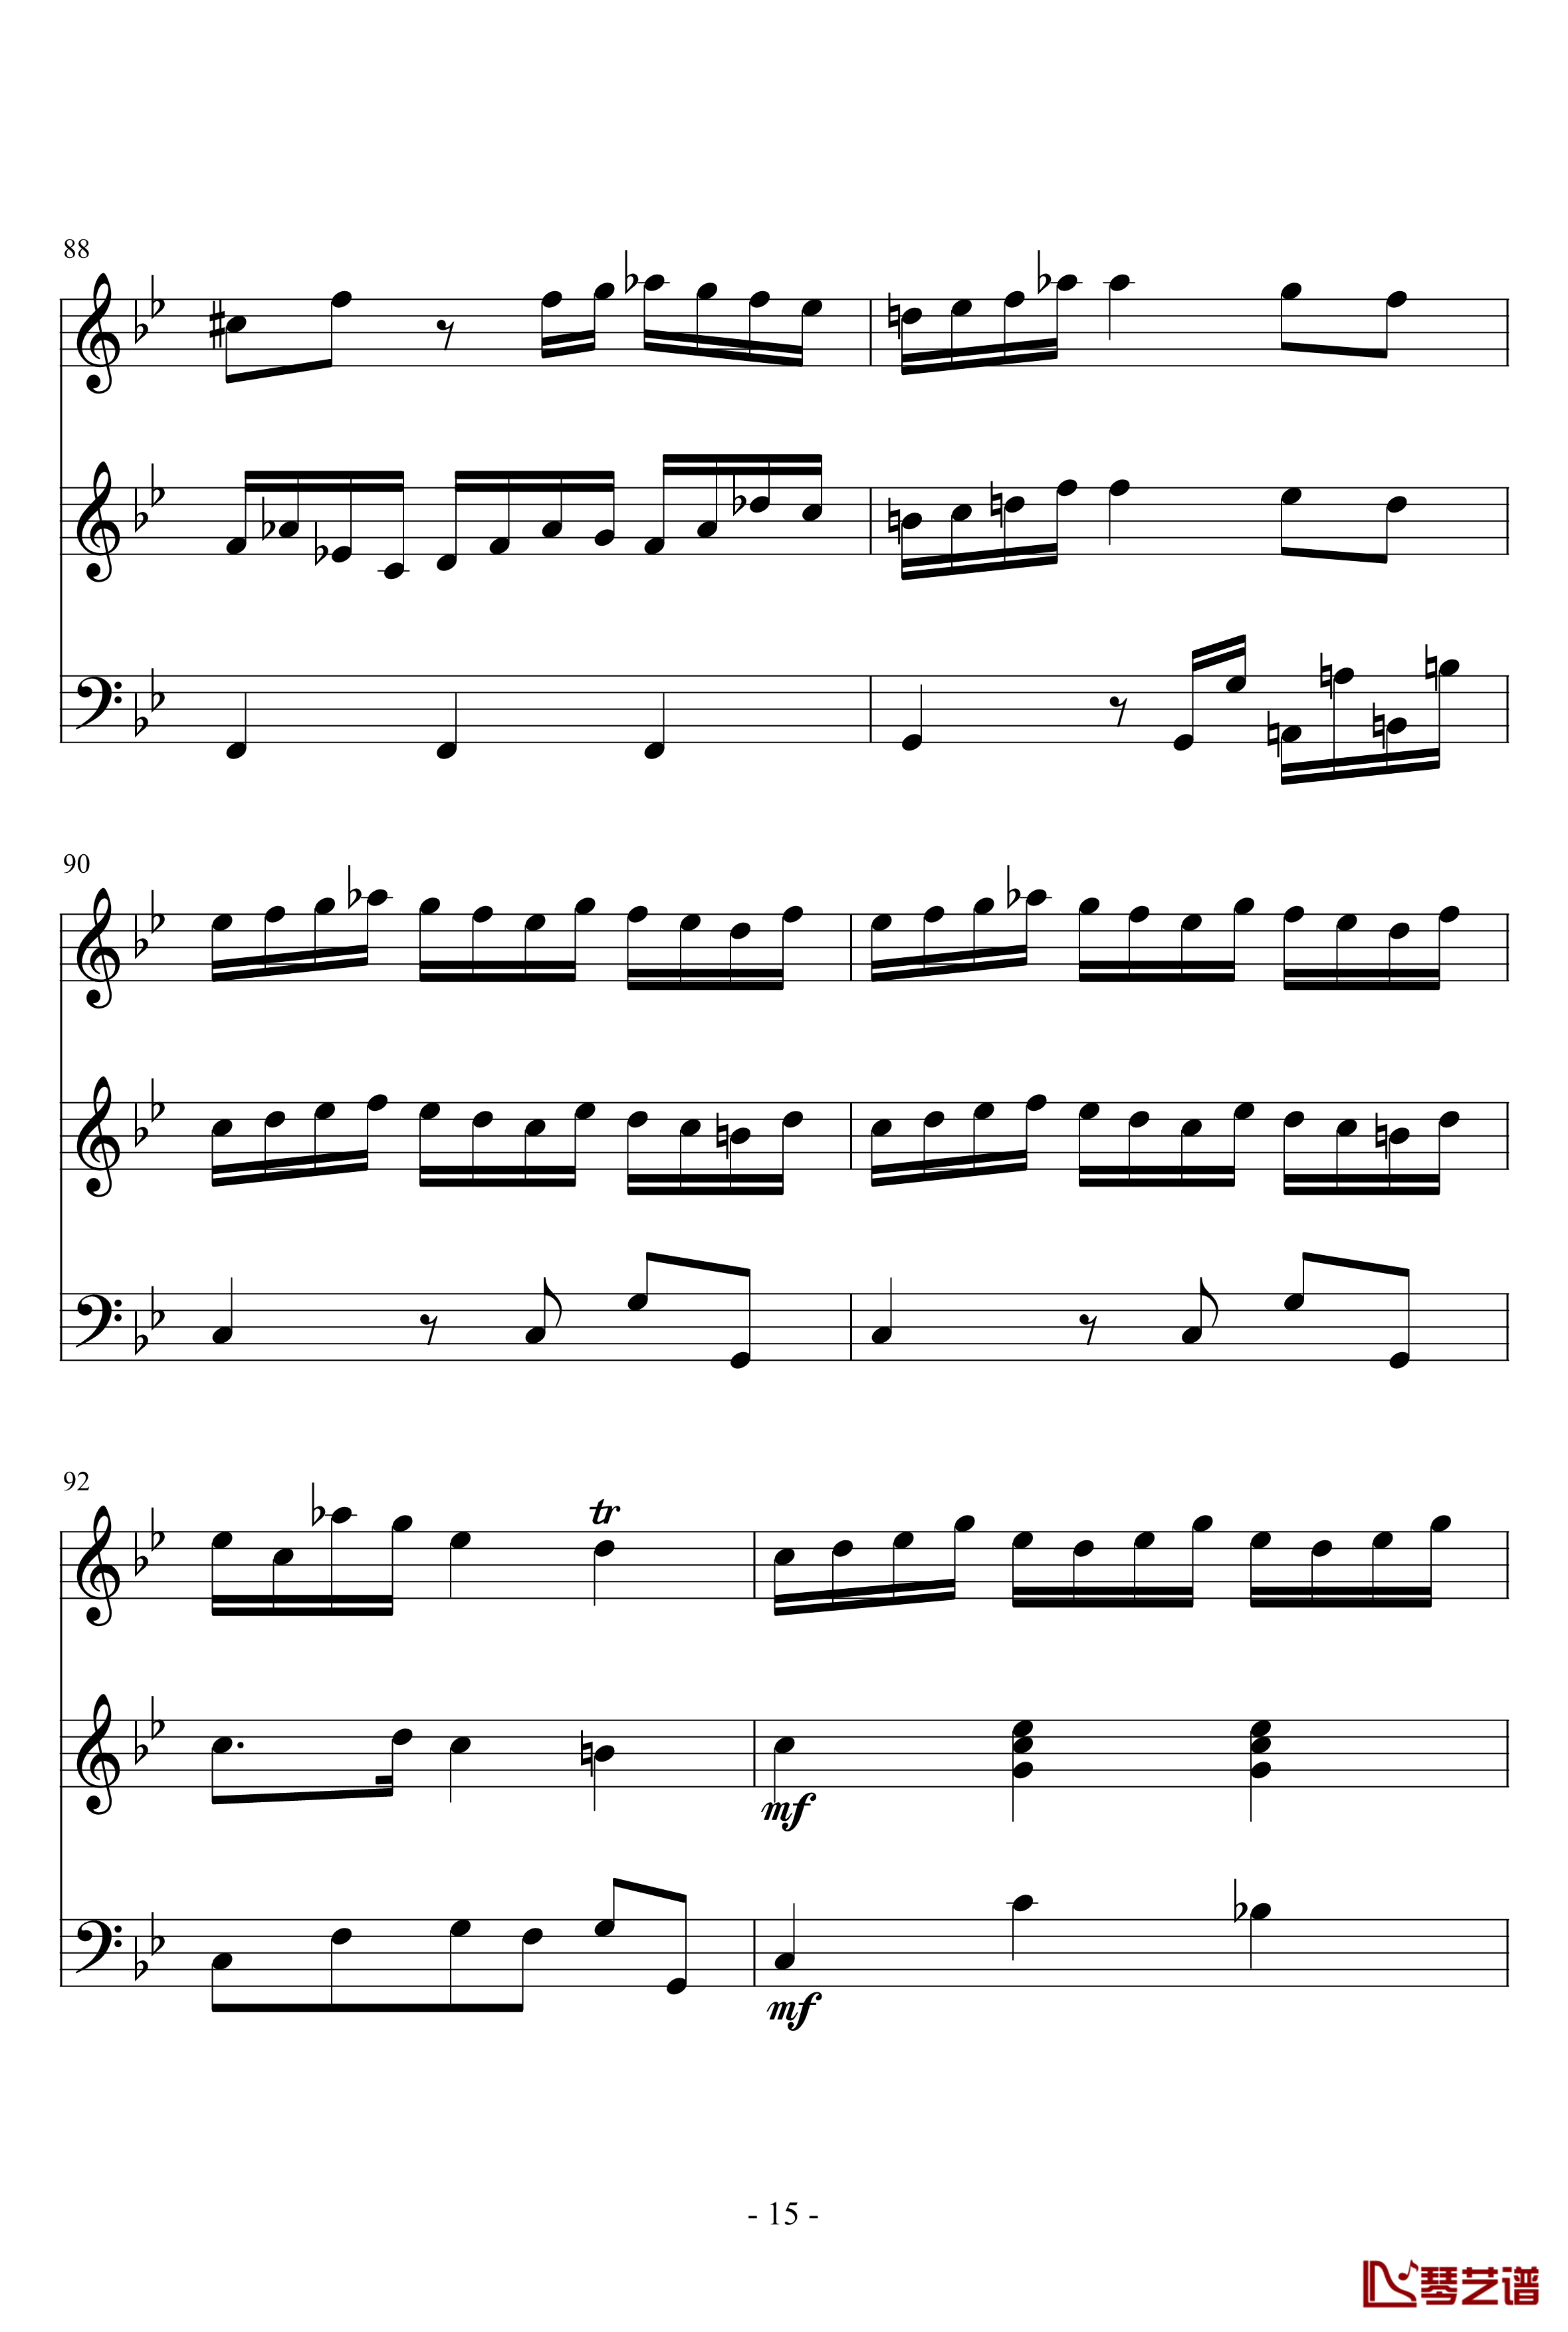 长笛与羽管键琴奏鸣曲第一乐章钢琴谱-巴赫-P.E.Bach15